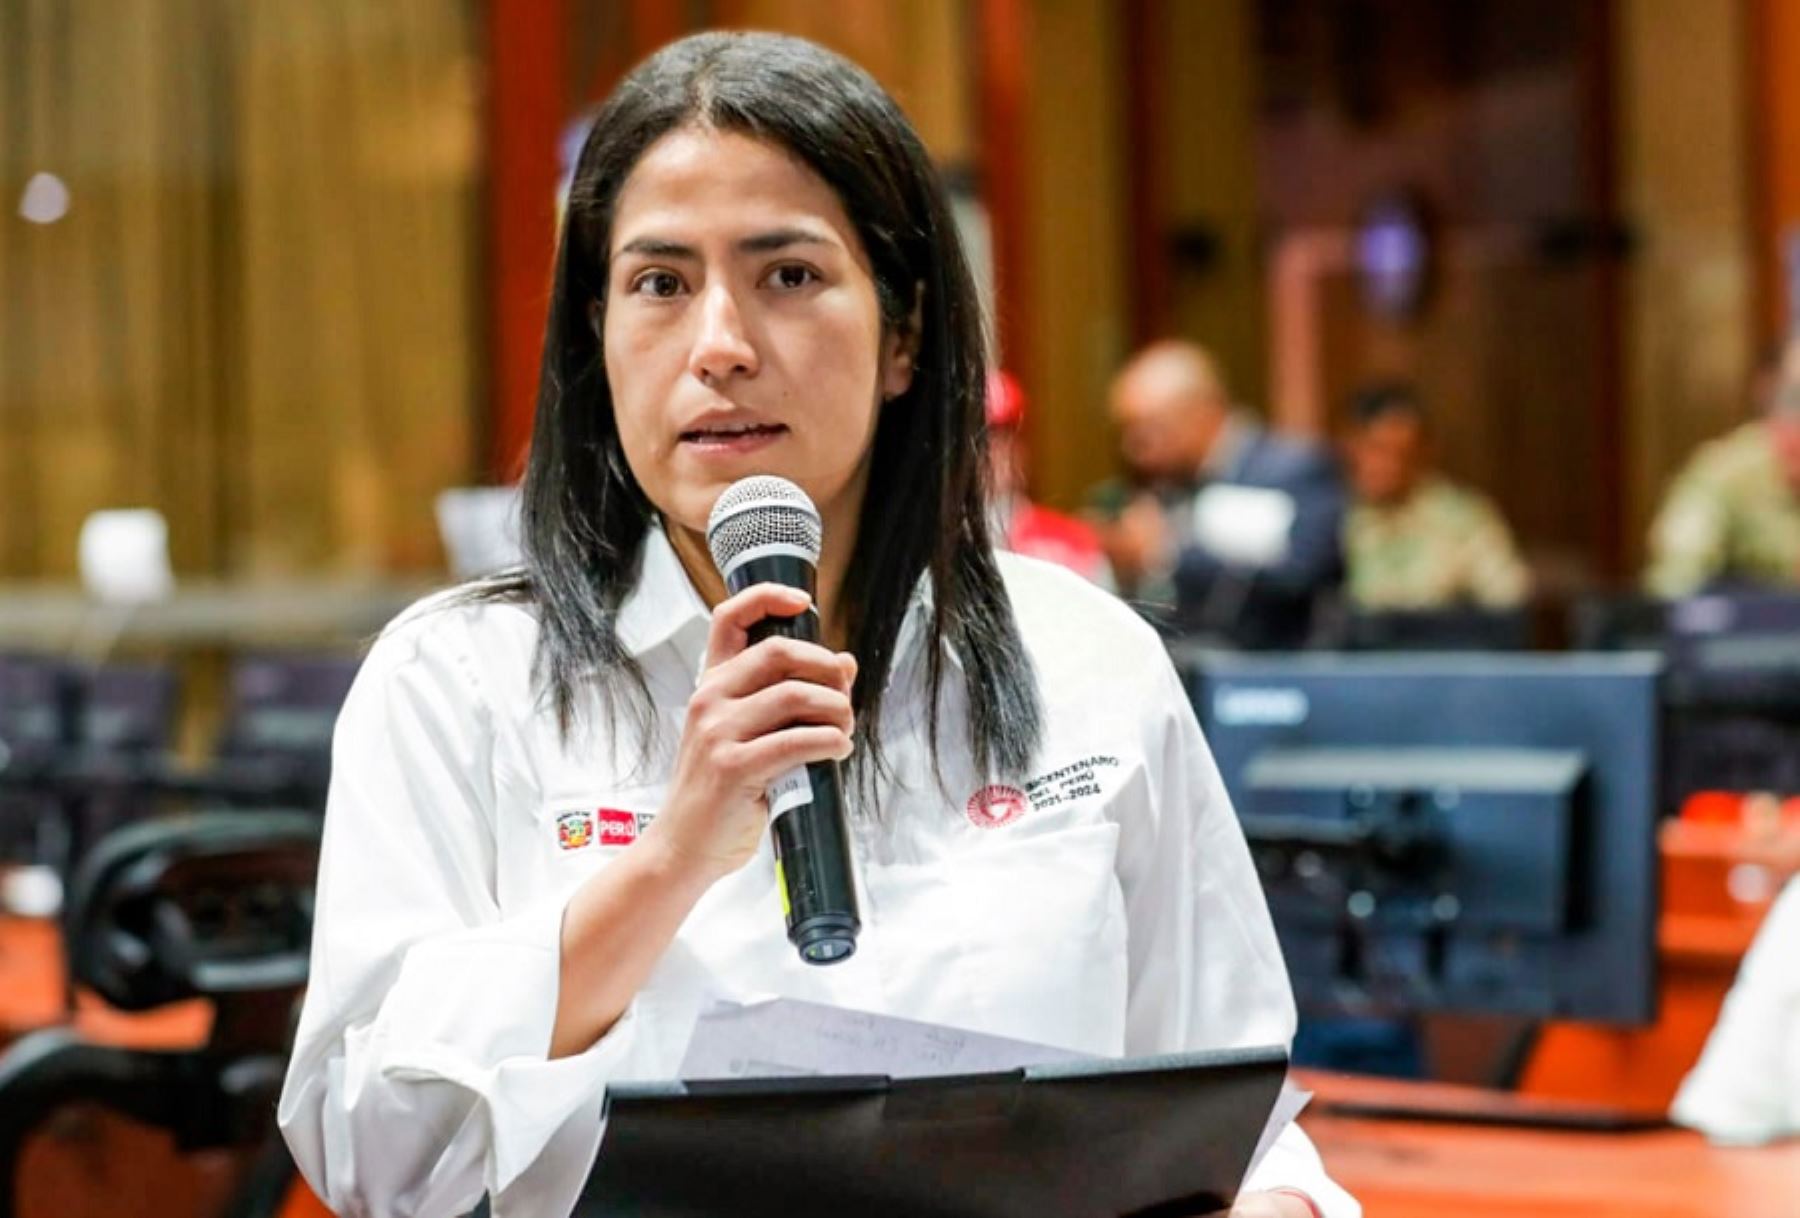 La ministra de Transportes y Comunicaciones, Paola Lazarte Castillo, informó hoy que en cuatro puntos de la Red Vial Nacional se registra tránsito restringido debido a protestas sociales.